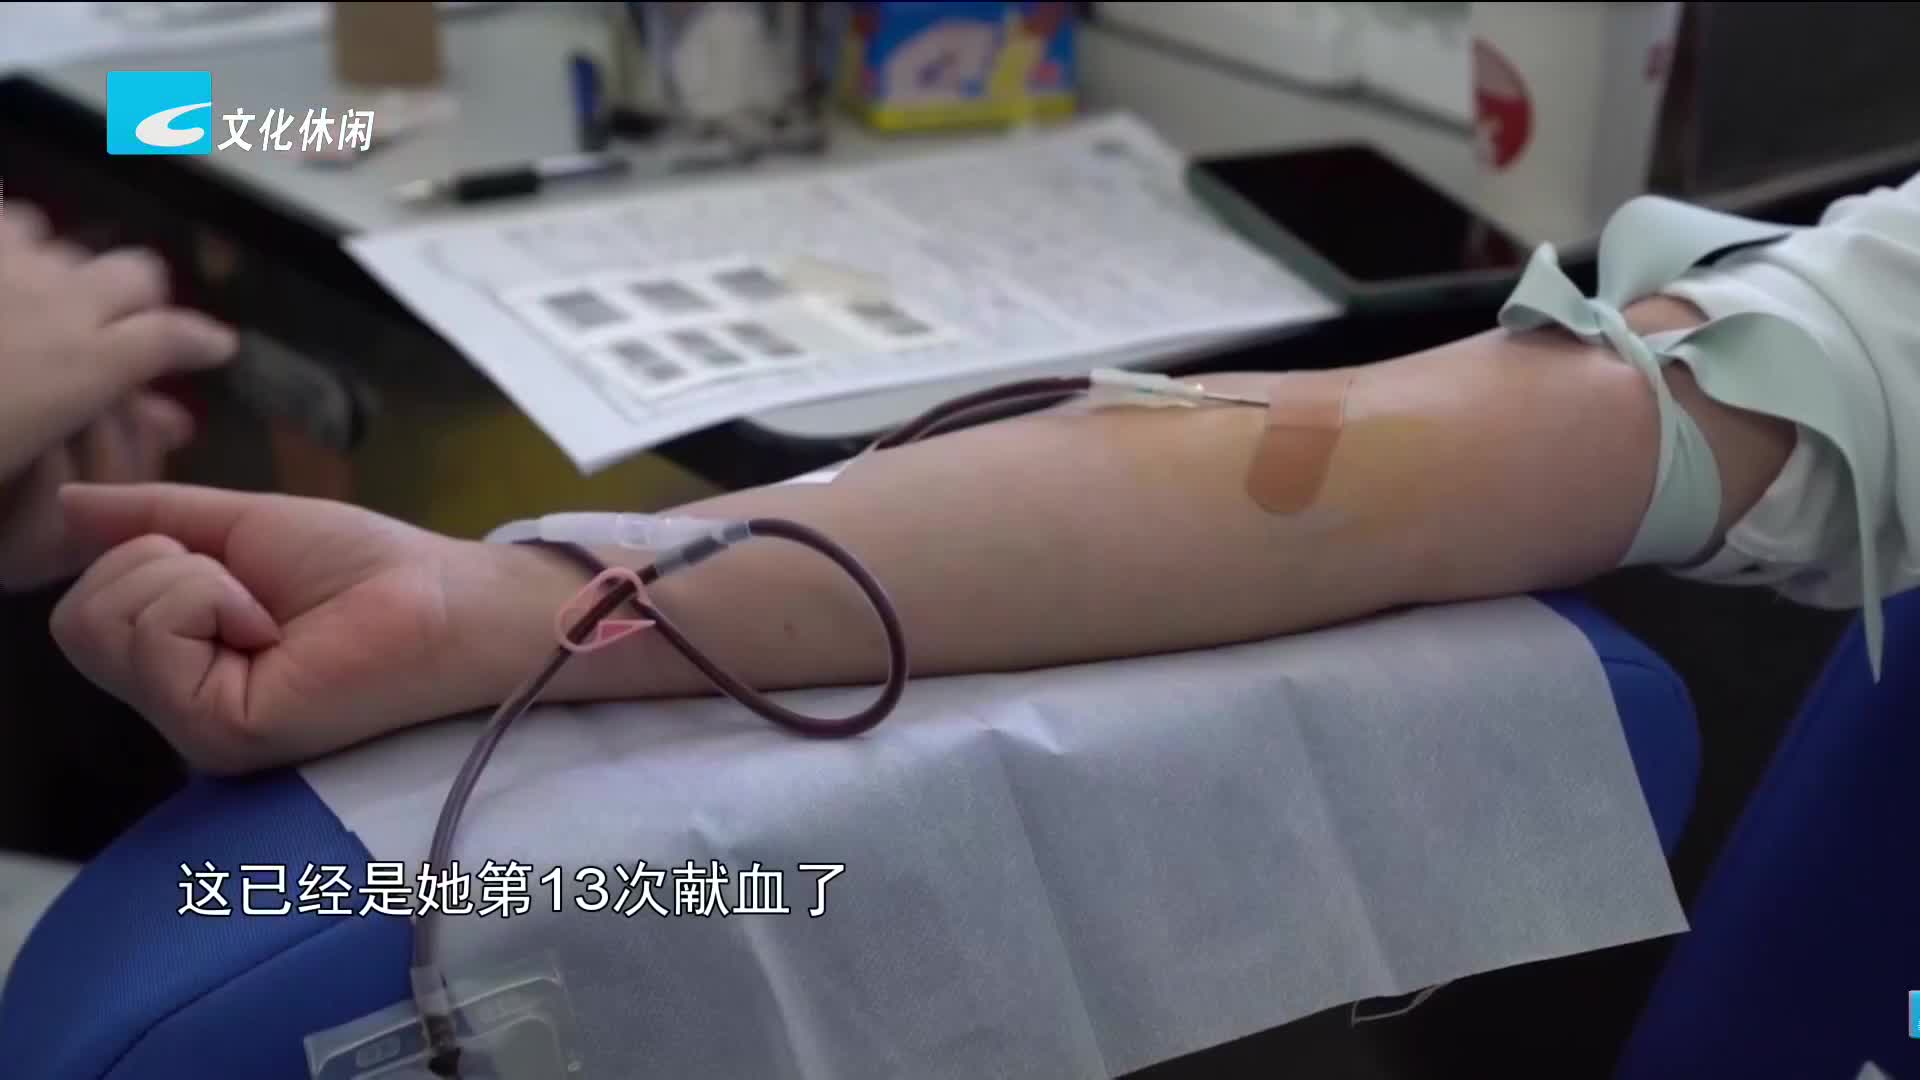 市民积极参与献血 临床用血还有缺口